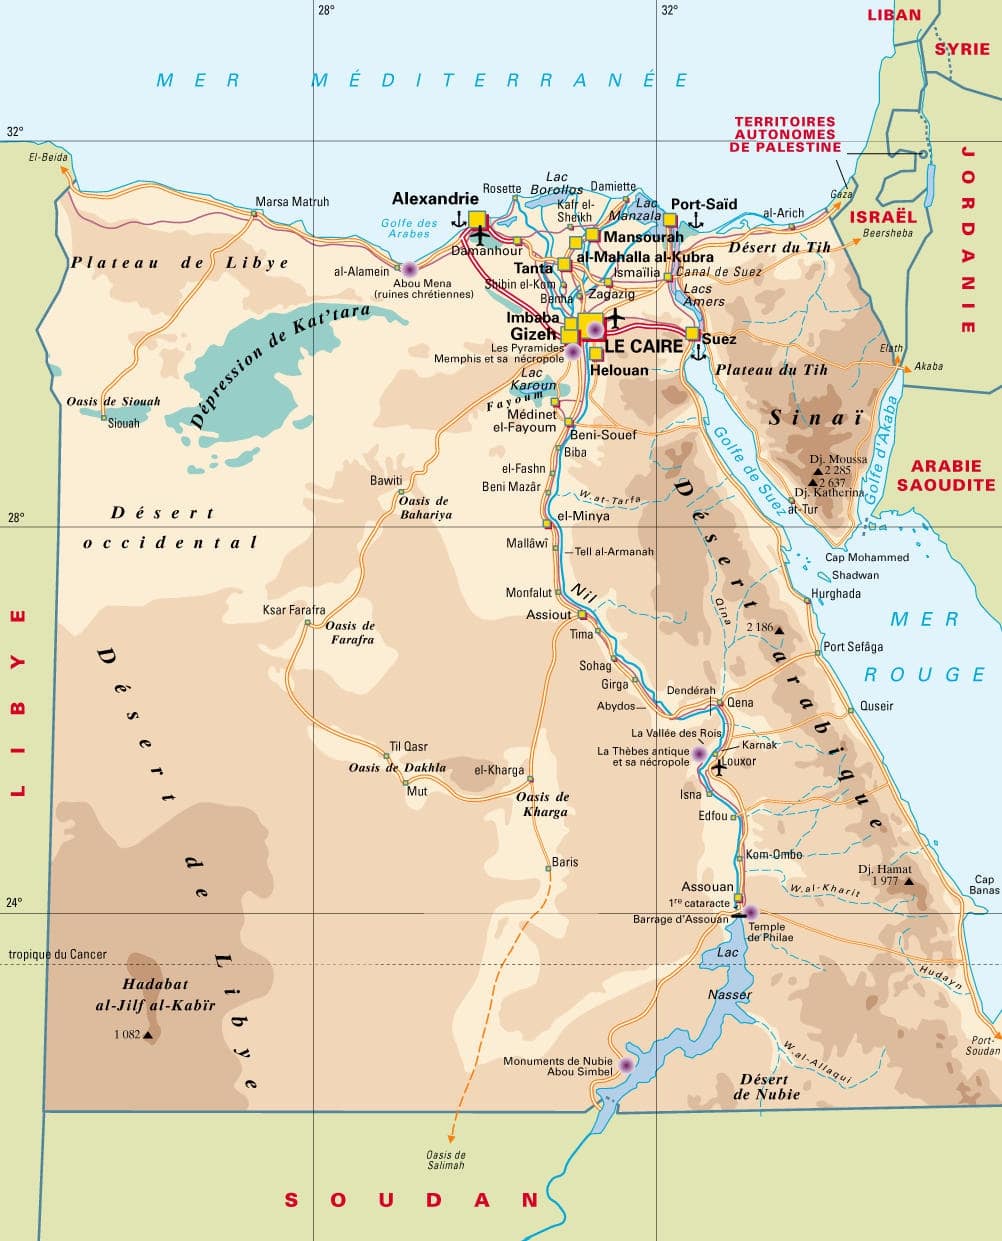 Carte détaillée des aéoroports et des déserts d'Egypte.